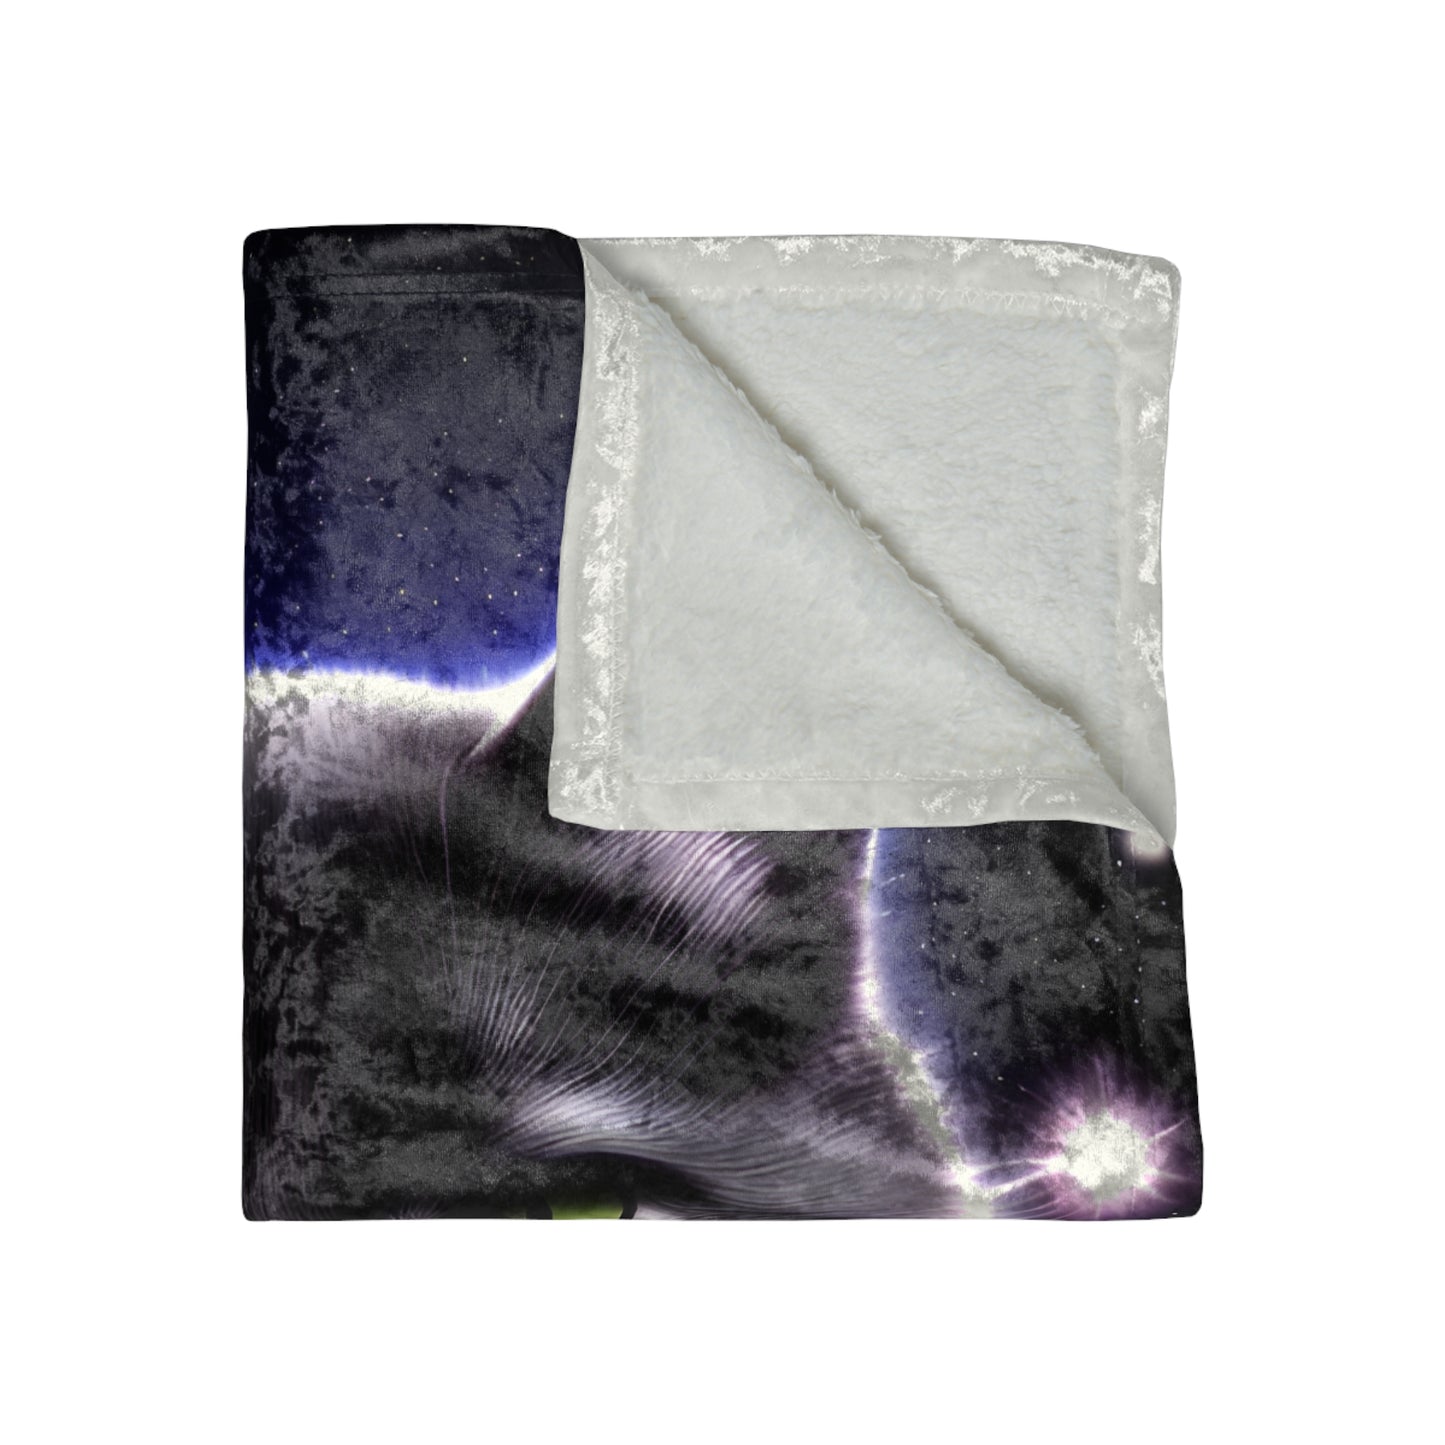 Throw Blanket - Celestial Cat Crushed Velvet Blanket, 50" x 60", Shiny Finish, Beautiful Blanket for your Living Room or Bedroom!